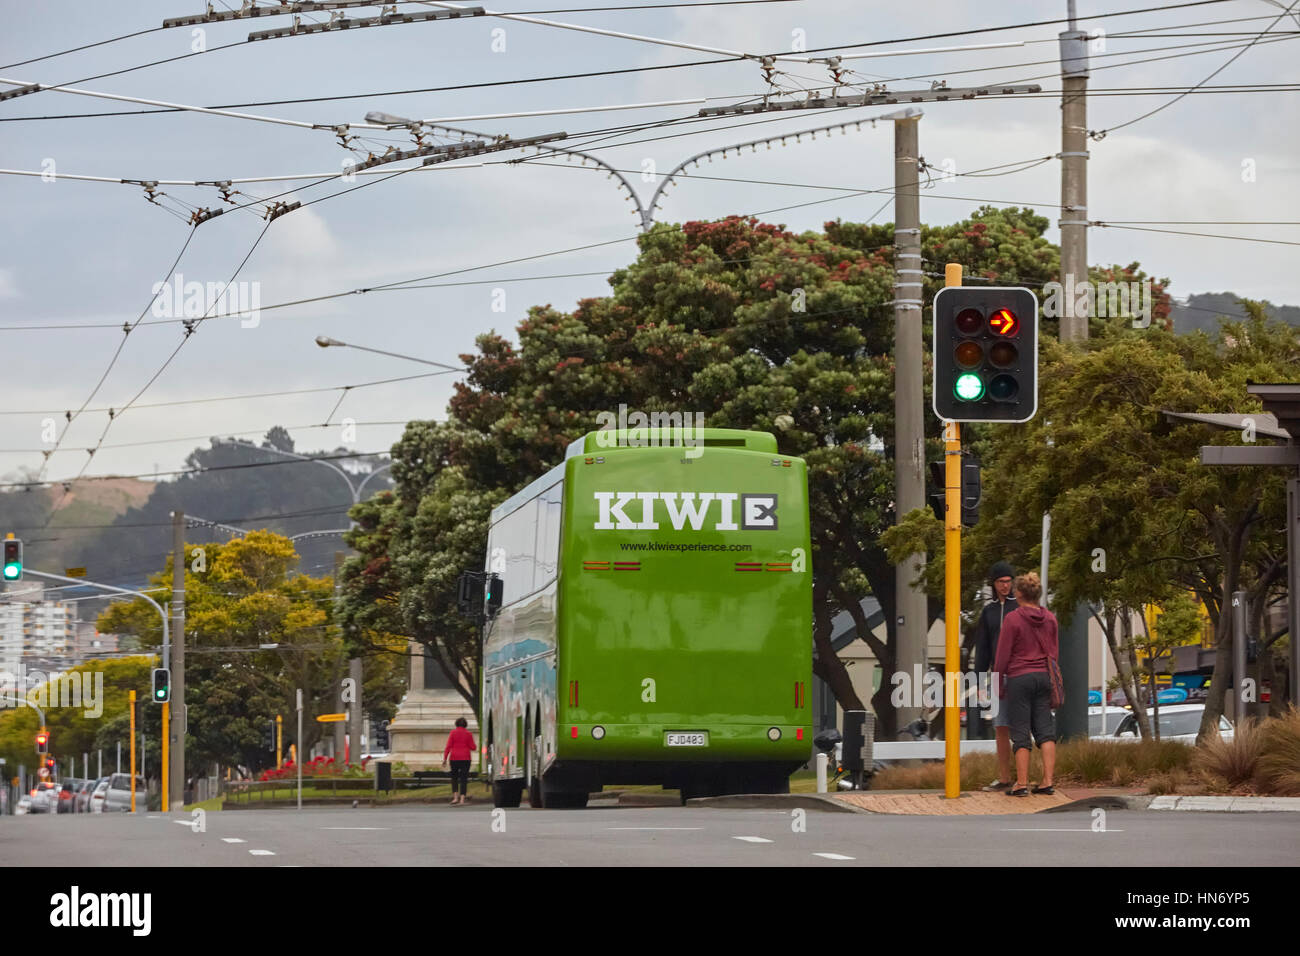 Kiwi-Erfahrung-Bus, Wellington, Neuseeland Stockfoto